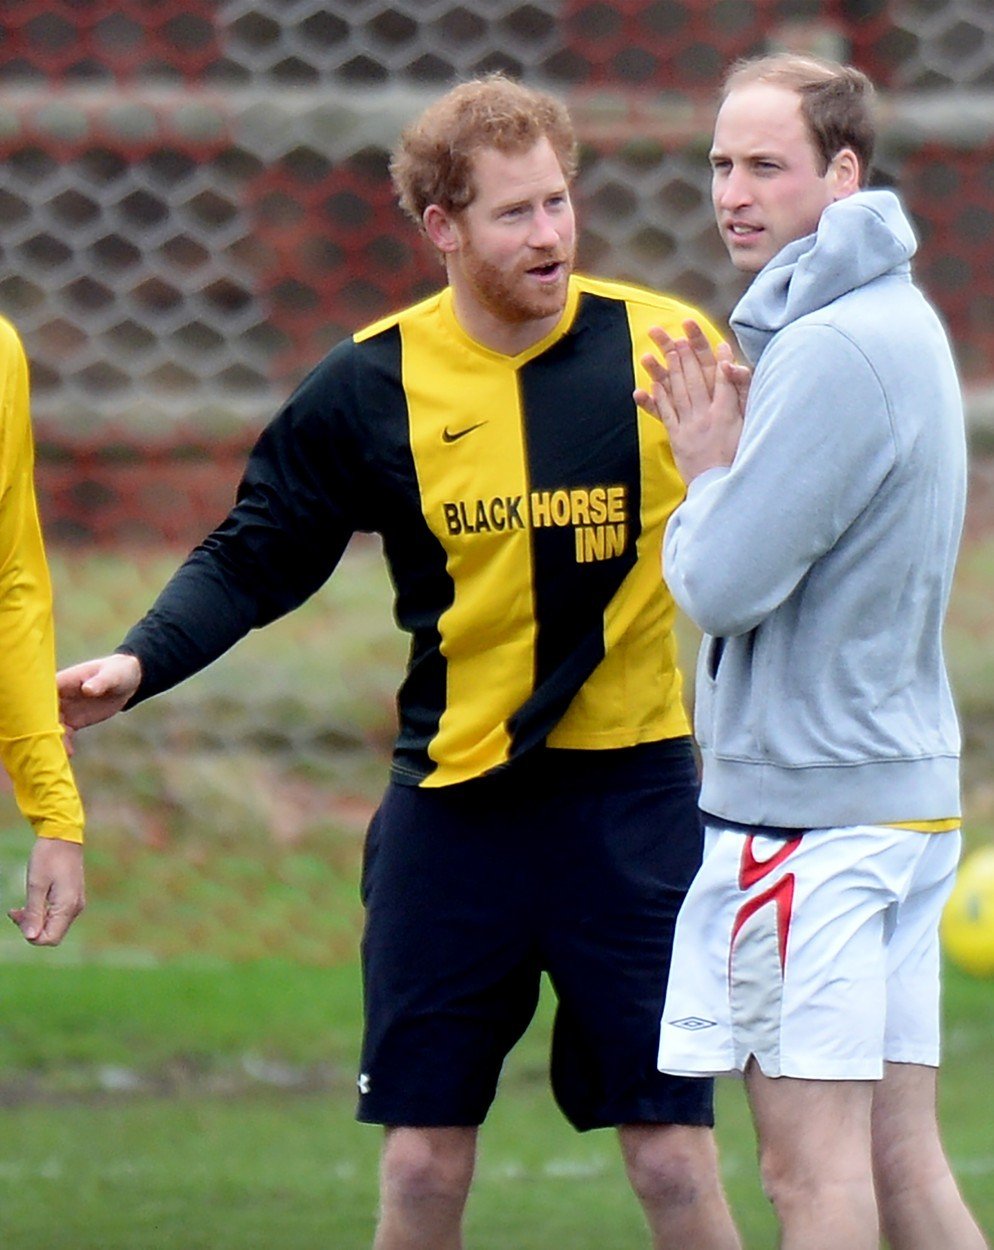 Princové Harry a William hrají fotbal